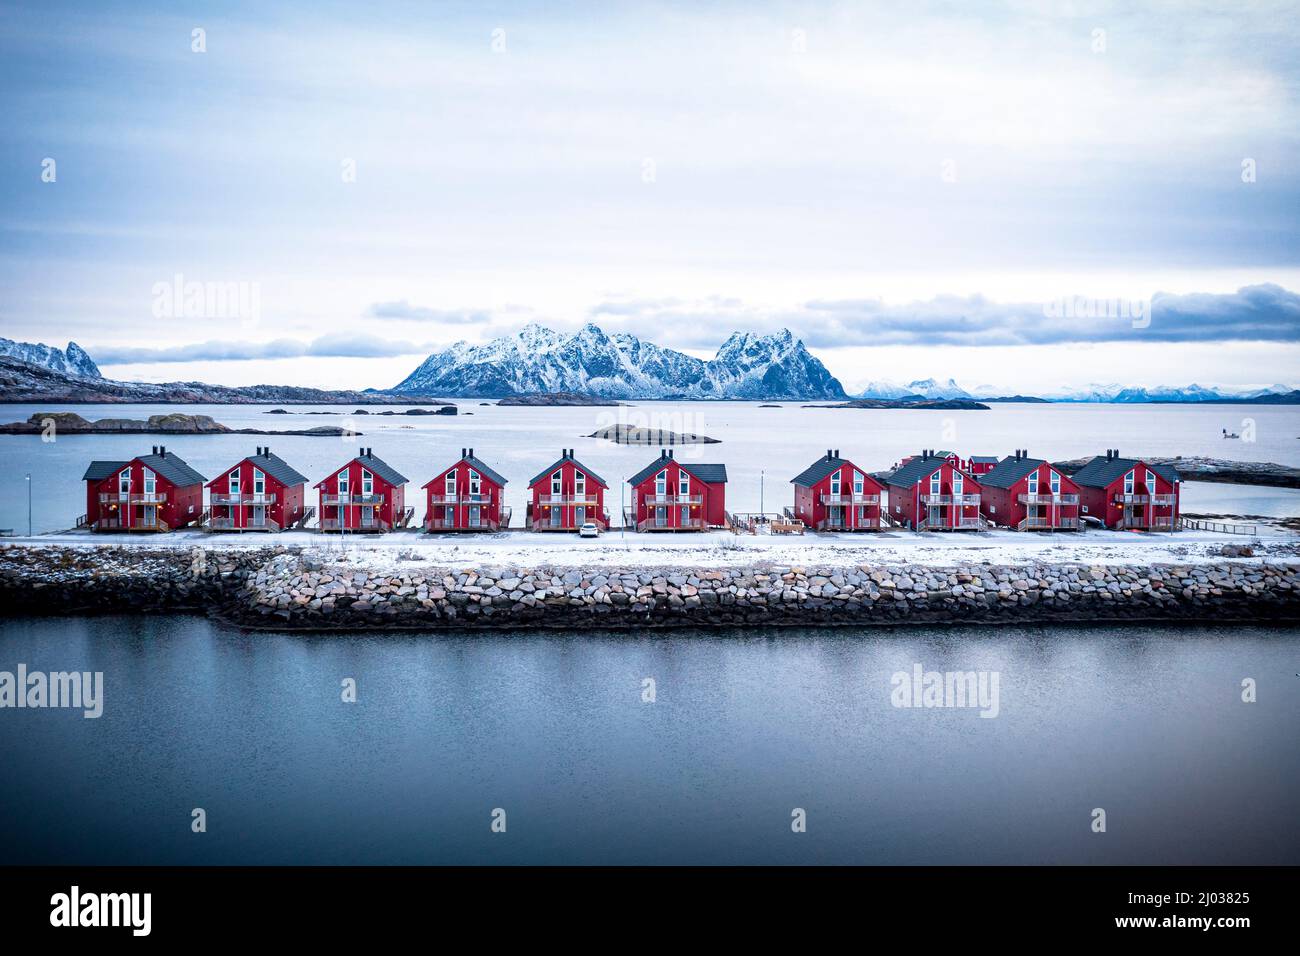 Vue aérienne des chalets de rorbu rouge dans une rangée au milieu de la mer froide en hiver, Svolvaer, comté de Nordland, îles Lofoten, Norvège, Scandinavie, Europe Banque D'Images